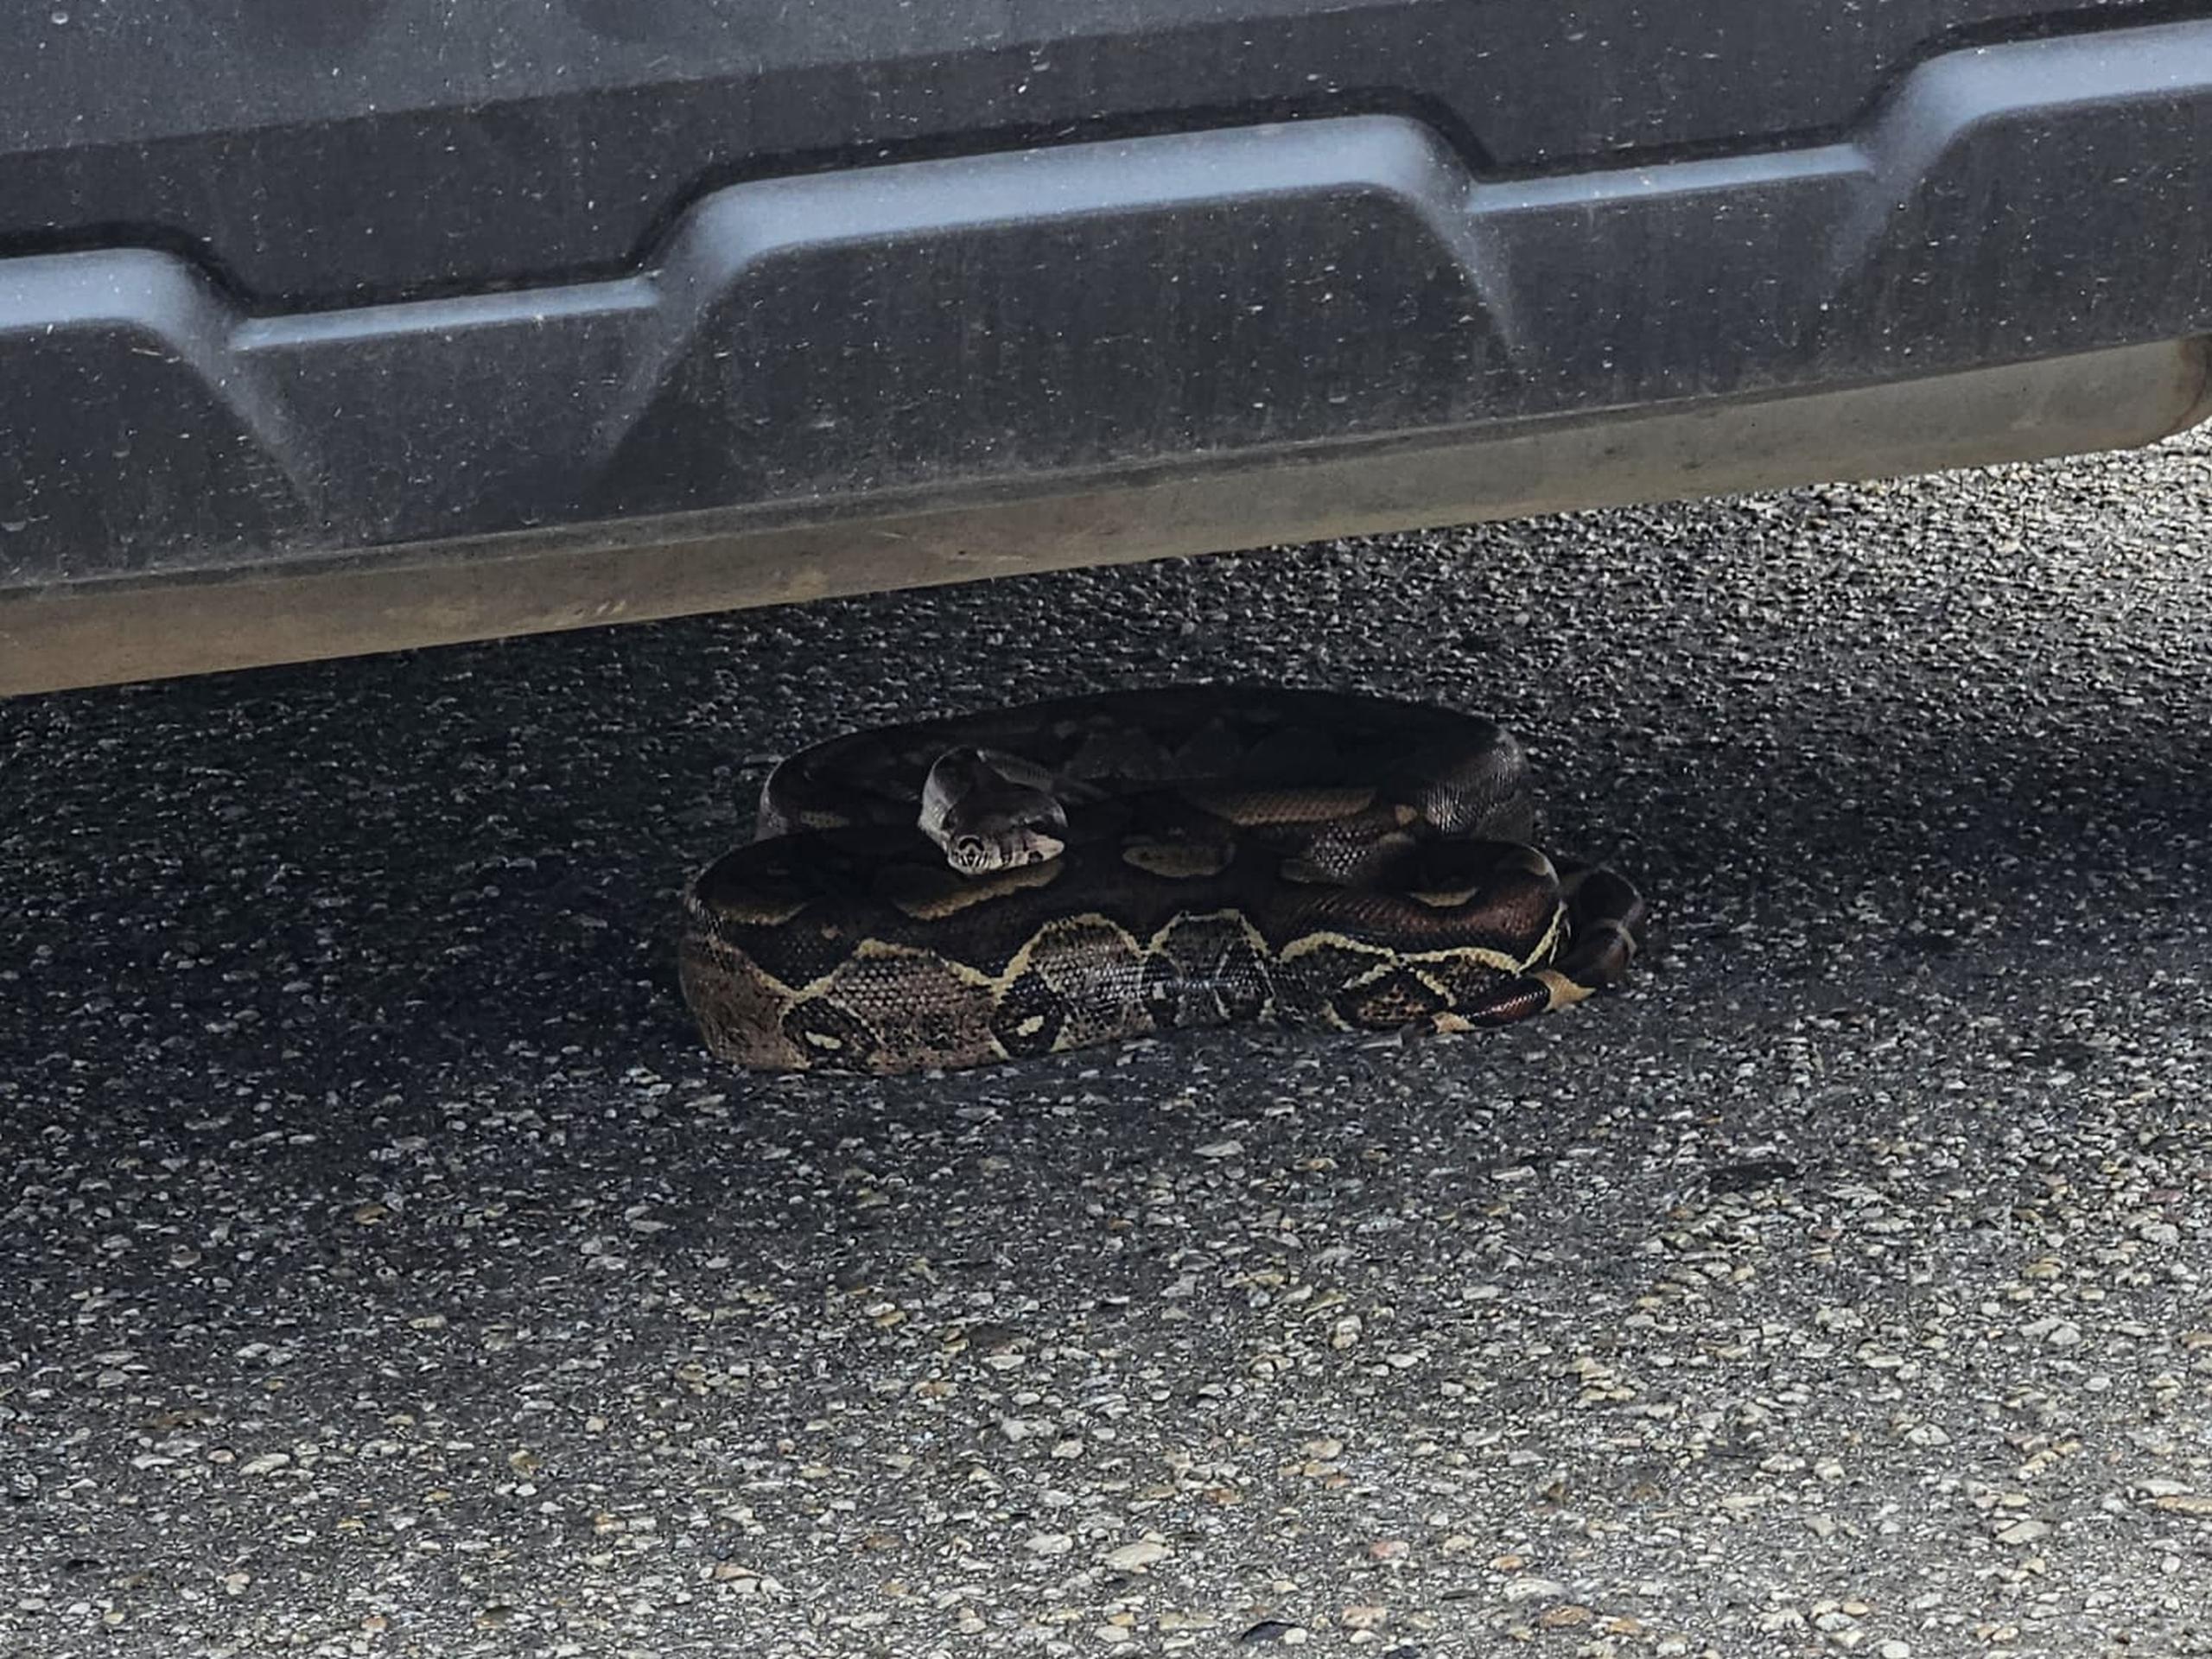 La serpiente estaba debajo de un automóvil en el estacionamiento del centro comercial Arecibo Plaza.